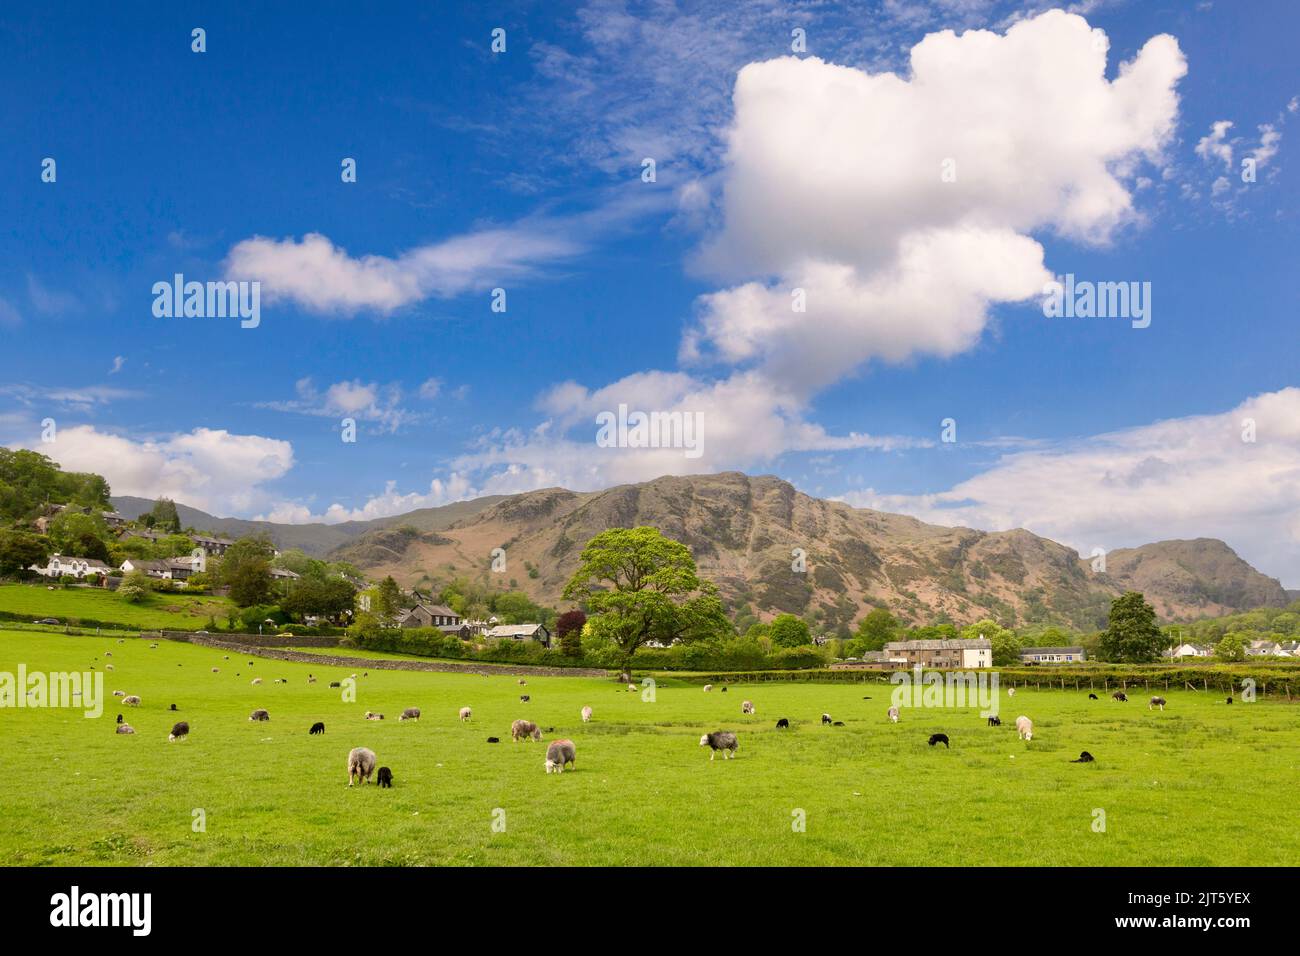 El pueblo de Coniston, Cumbria, Reino Unido, en su entorno bajo el Lake District Fells, con ovejas y pastos en primer plano. Foto de stock